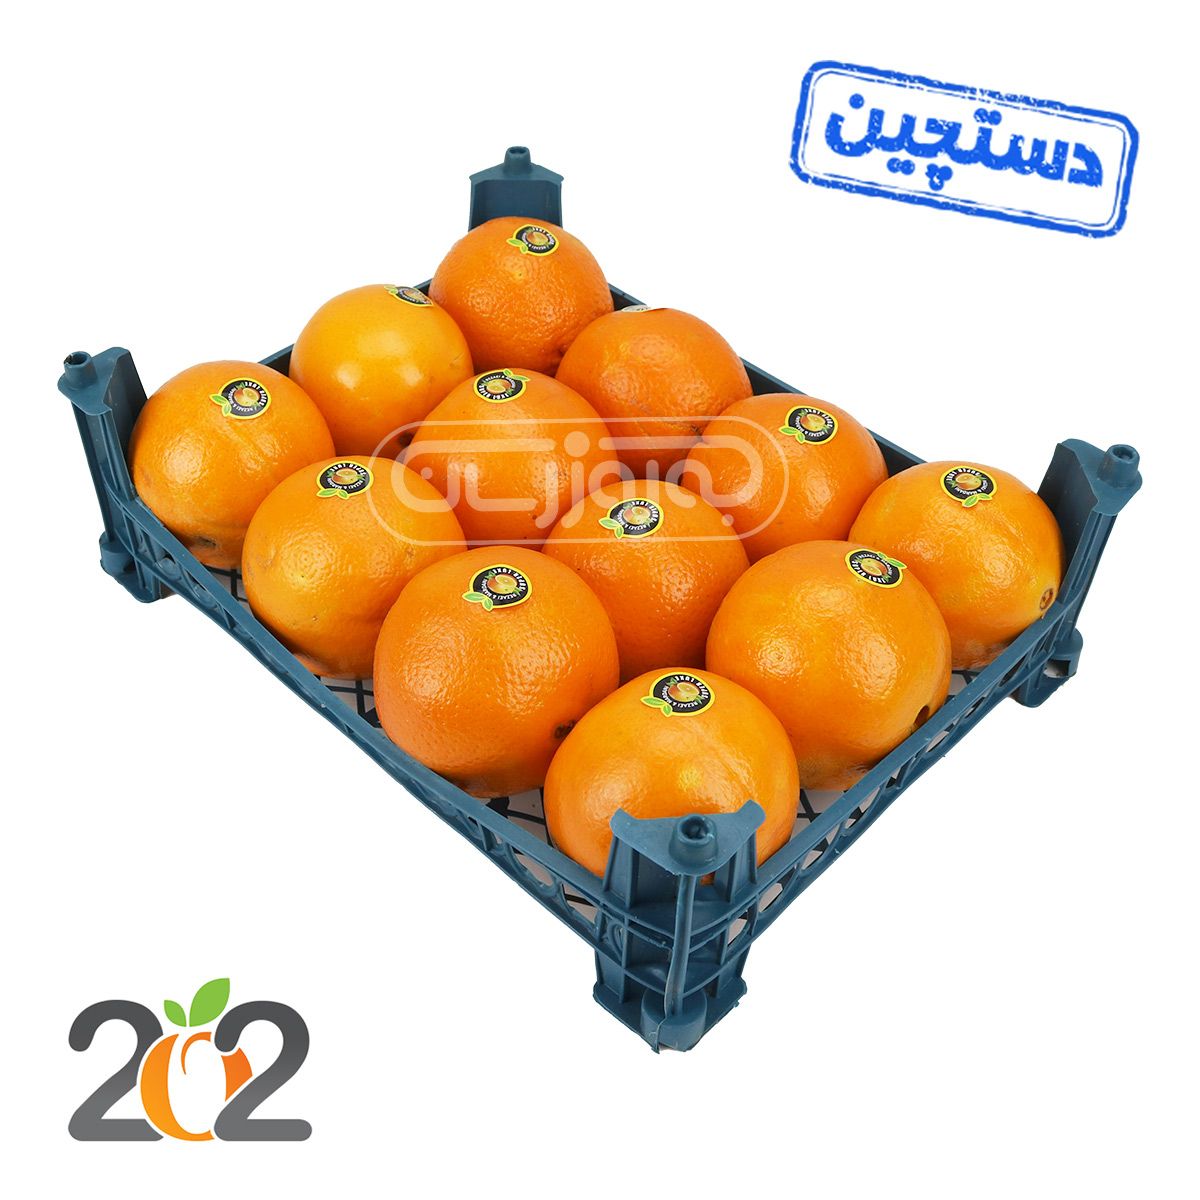 پرتقال تامسون شمال دستچین سبدی برند 202 حدود 2.5 تا 3.5 کیلوگرم